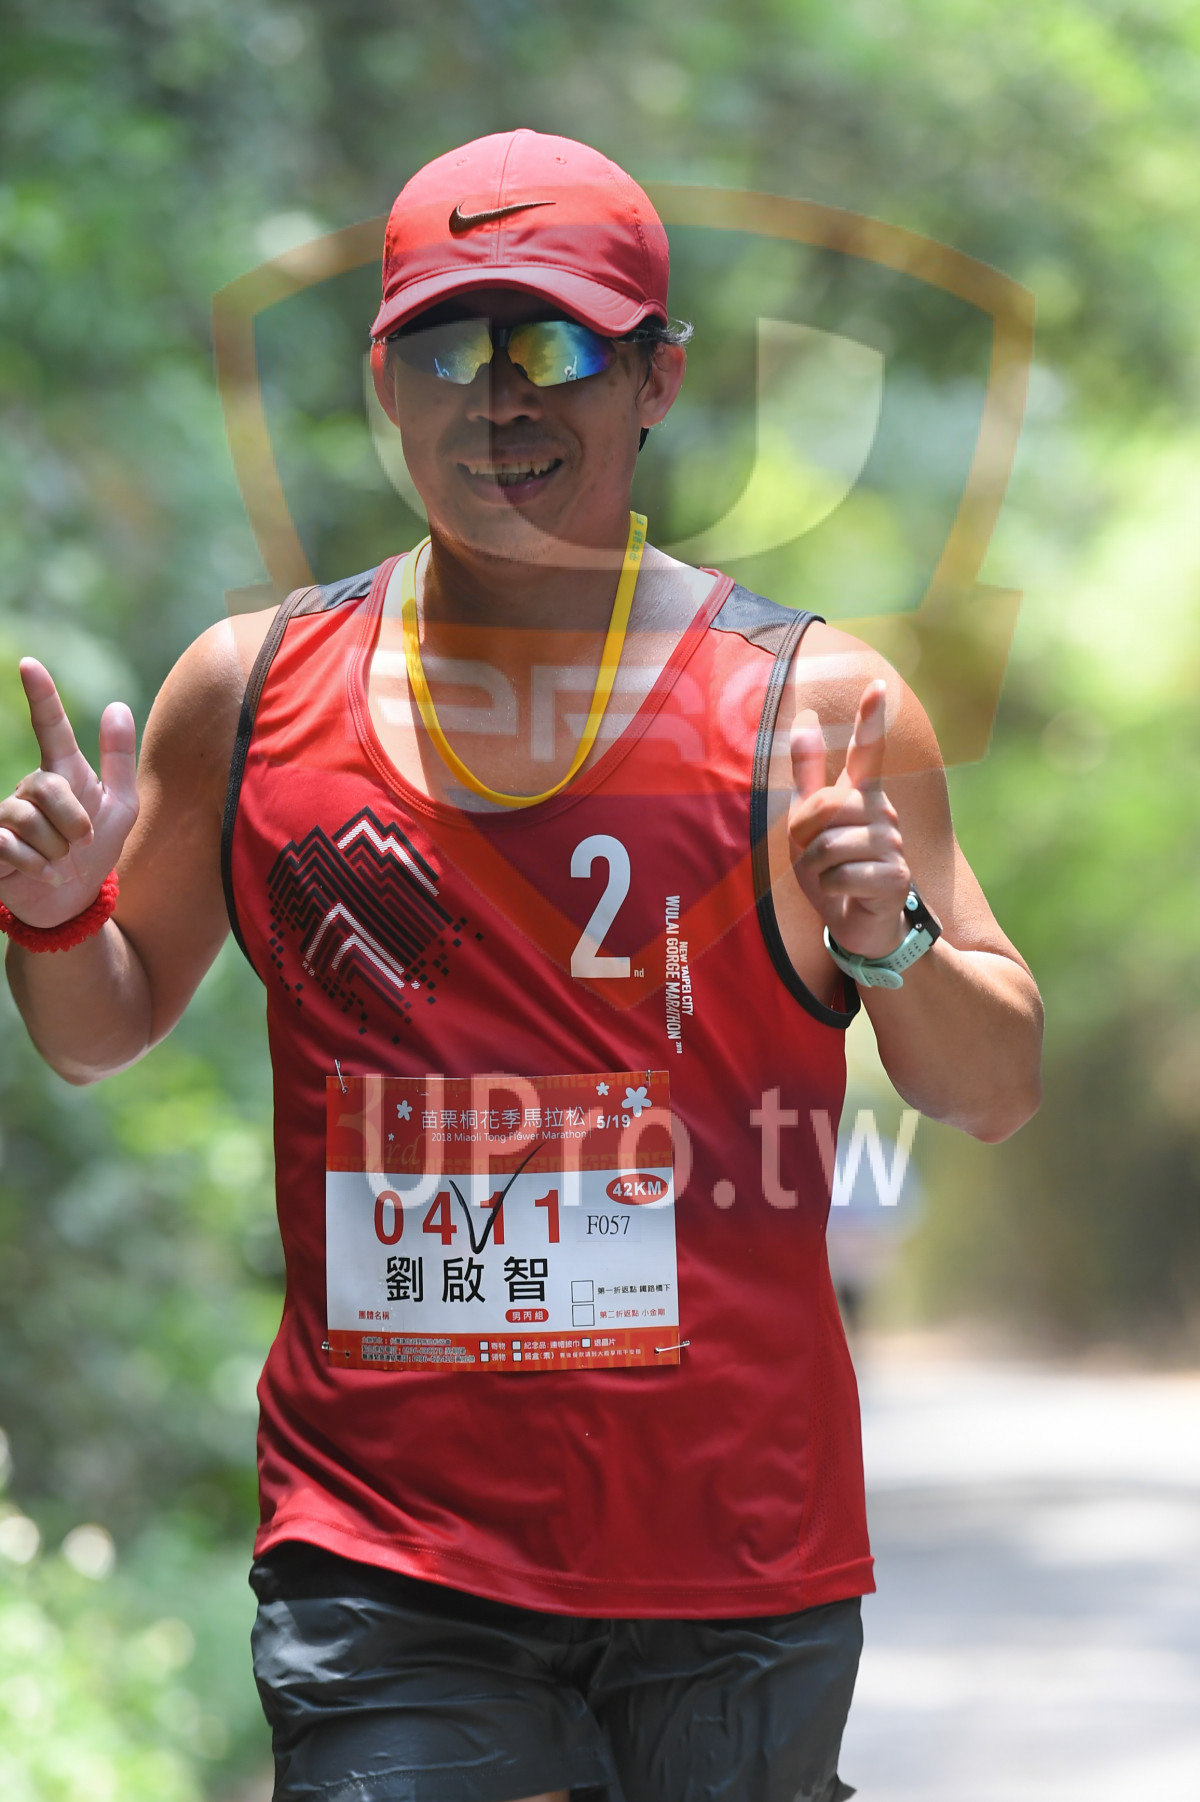 nd M,*5119,2018 MiaoiTong Flswer Marathon,041 1,,42KM,F057,|綠色隧道4|中年人